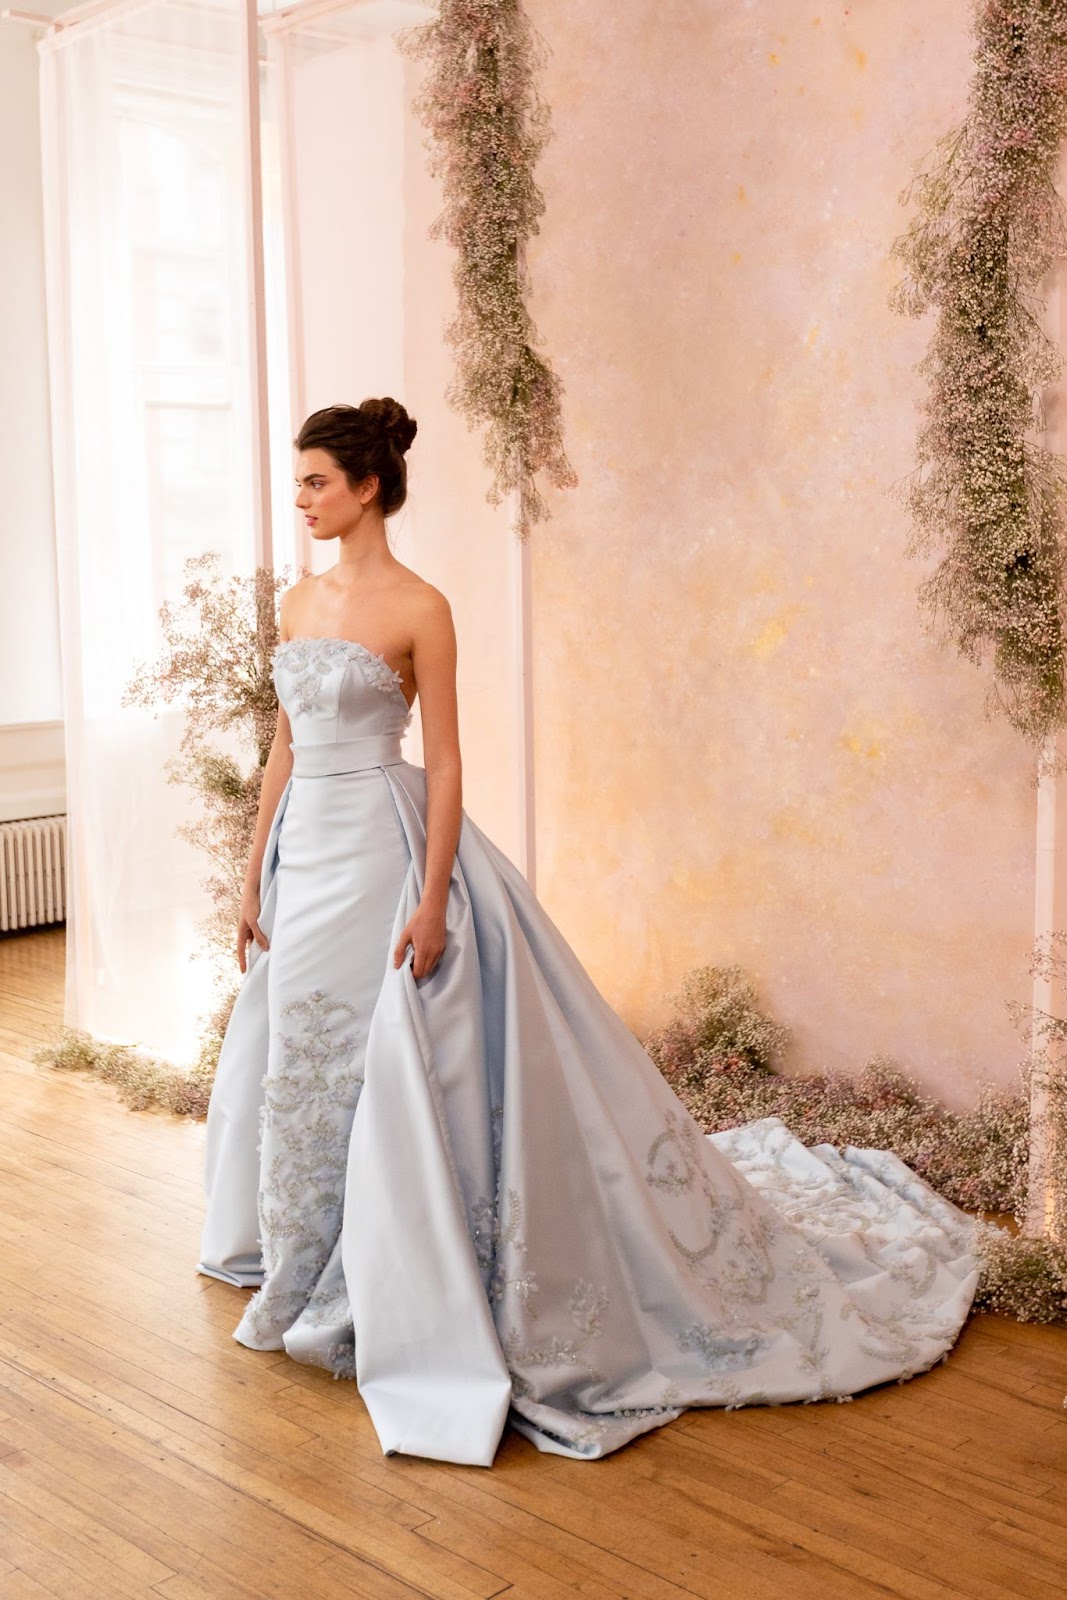 Powder blue as a wedding gown.